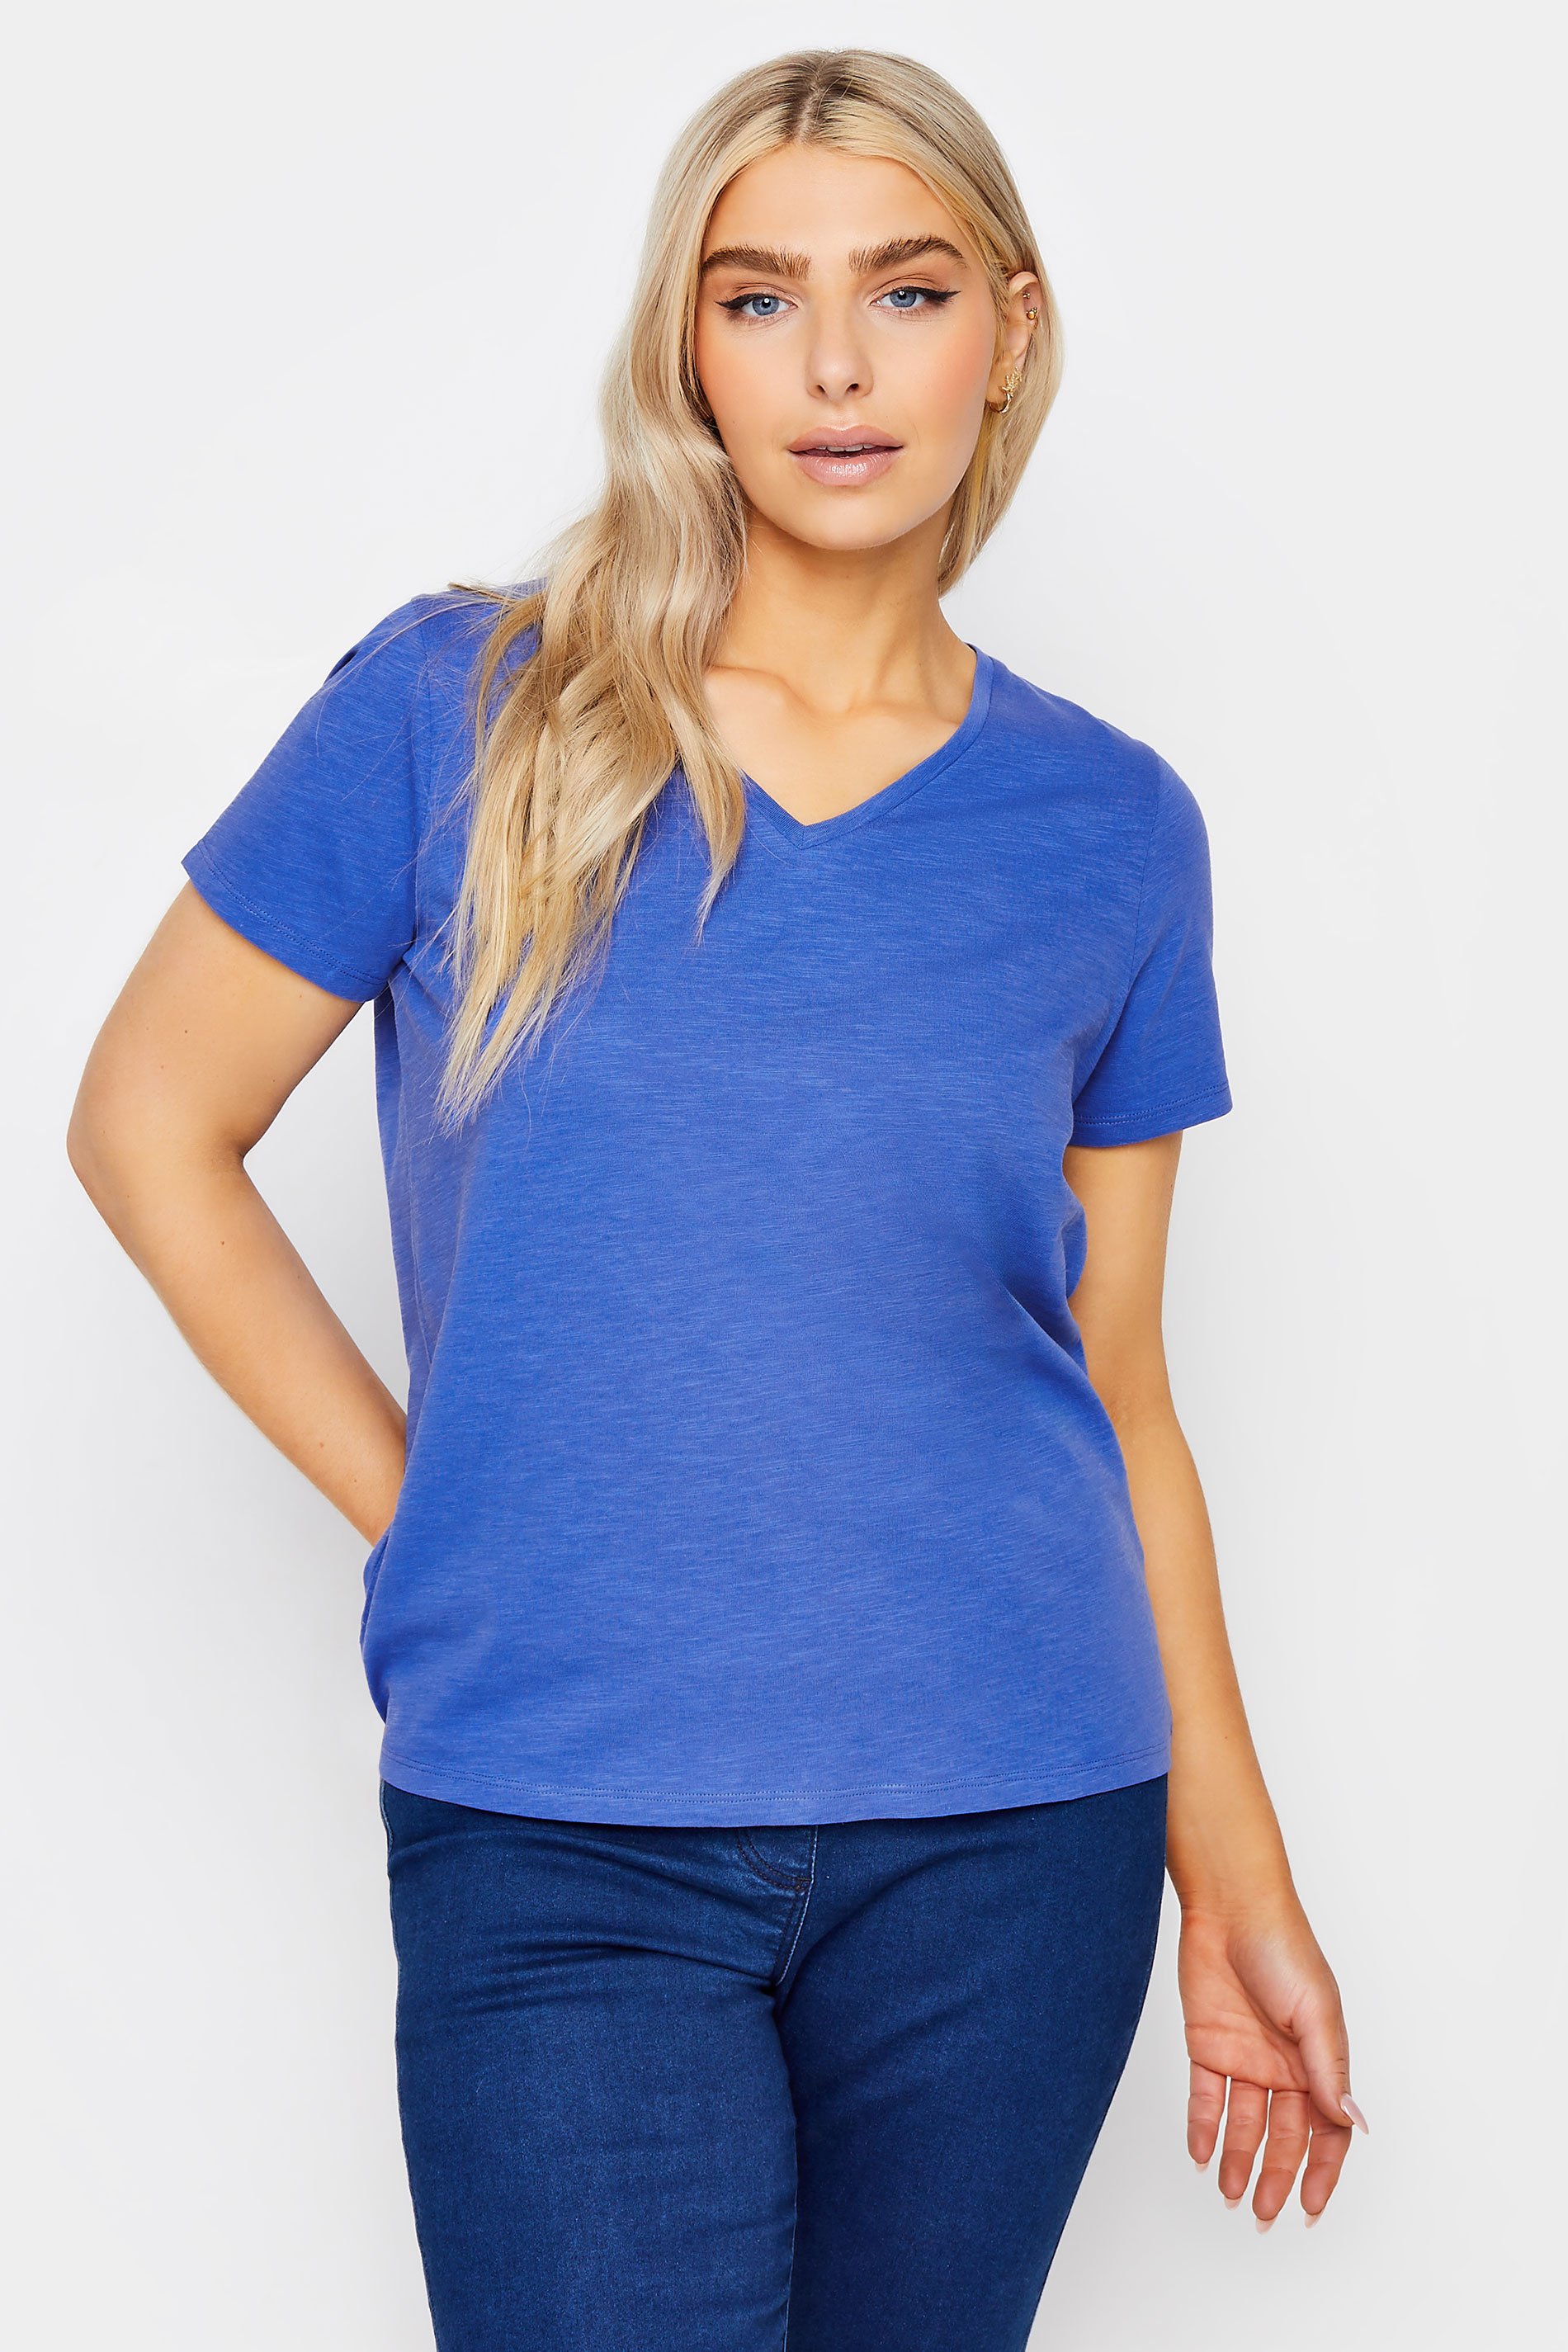 M&Co Cobalt Blue V-Neck Cotton T-Shirt | M&Co 1